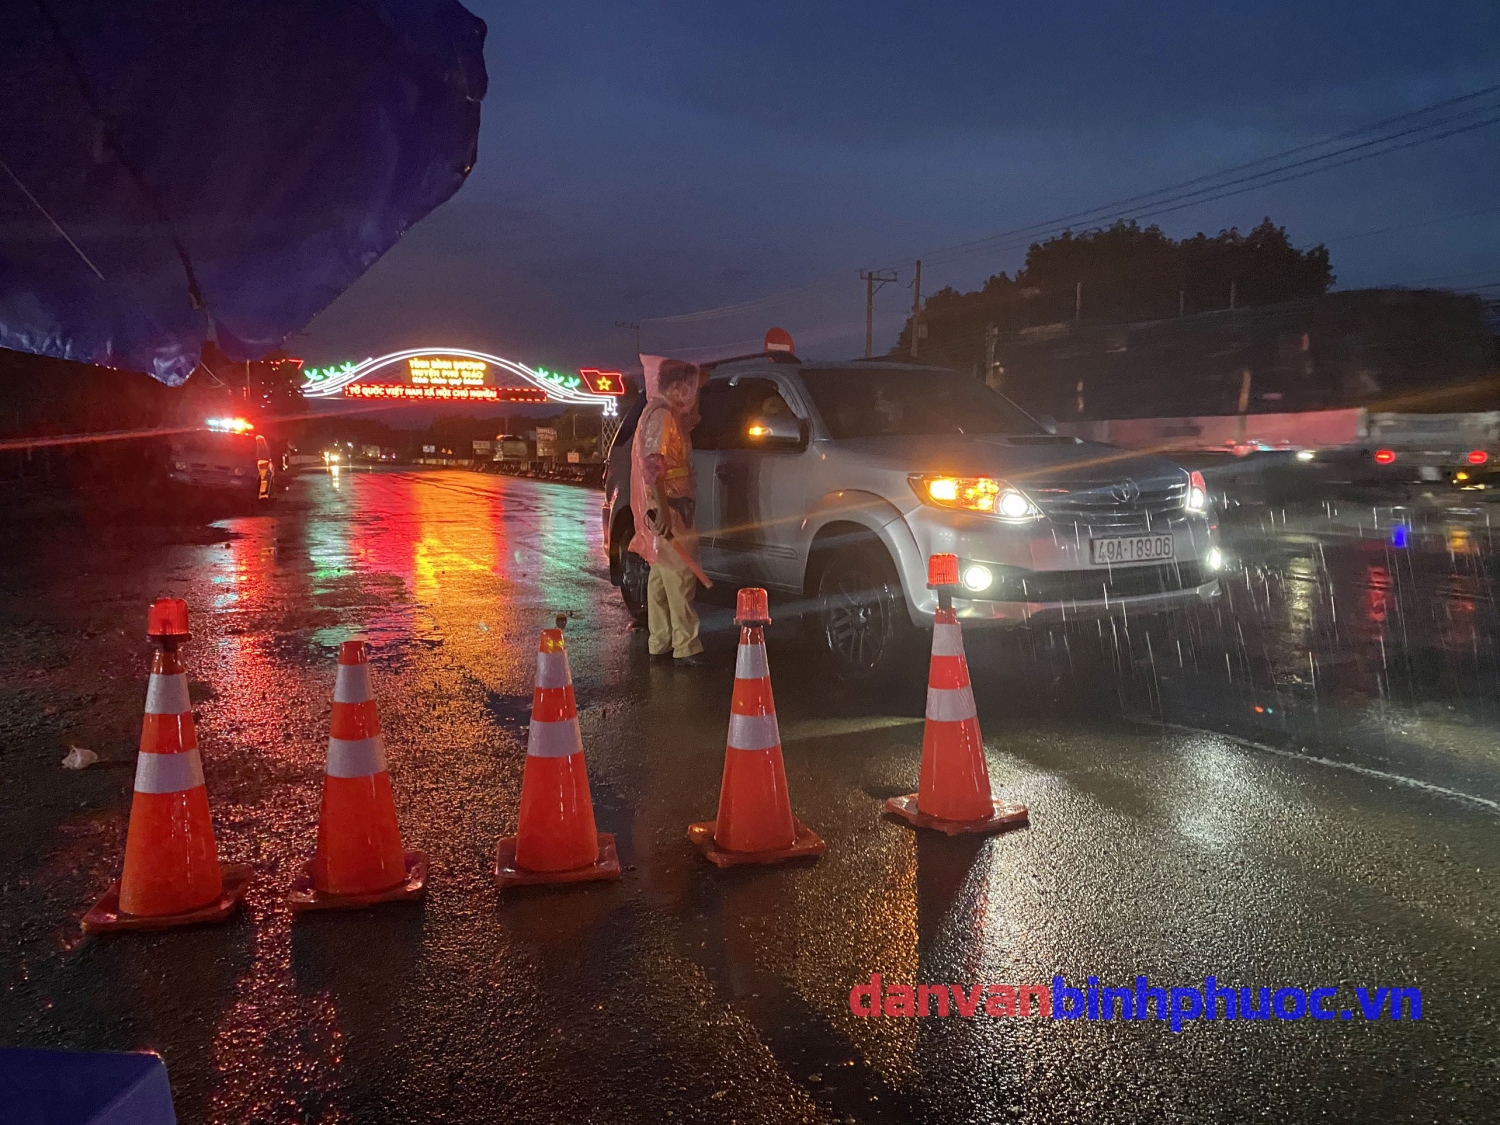 Hình ảnh Lực lượng chức năng dầm mưa thực hiện nhiệm vụ tại chốt giao thông trên tuyết đường ĐT 741 thuộc địa bàn huyện Đồng Phú giáp với tỉnh Bình Dương